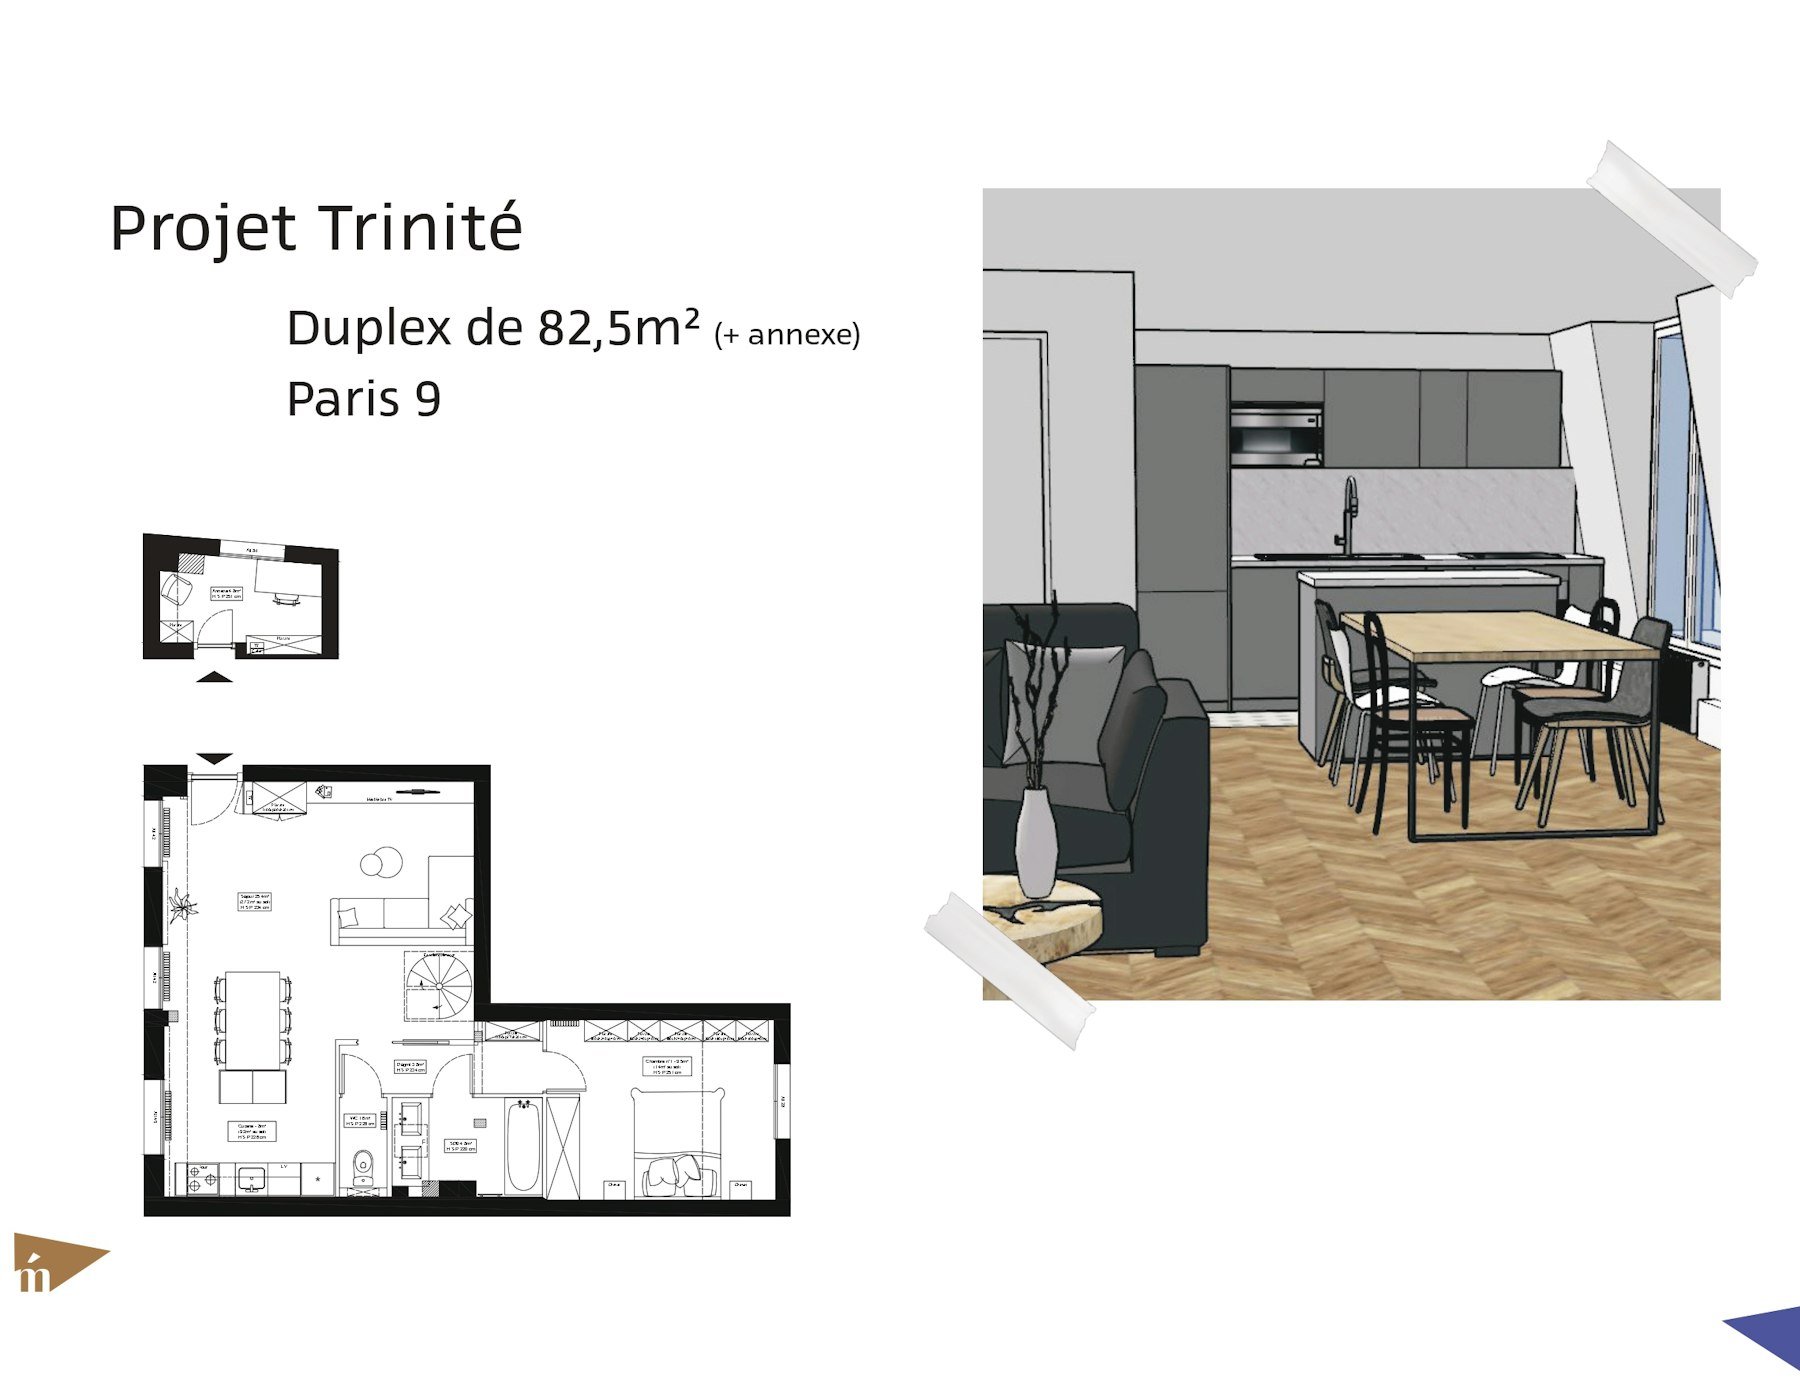 photo Projet Trinité - Duplex de 82,5m² / Annexe de 4,8m² - Paris 9 Léa Mast - Architecte hemea